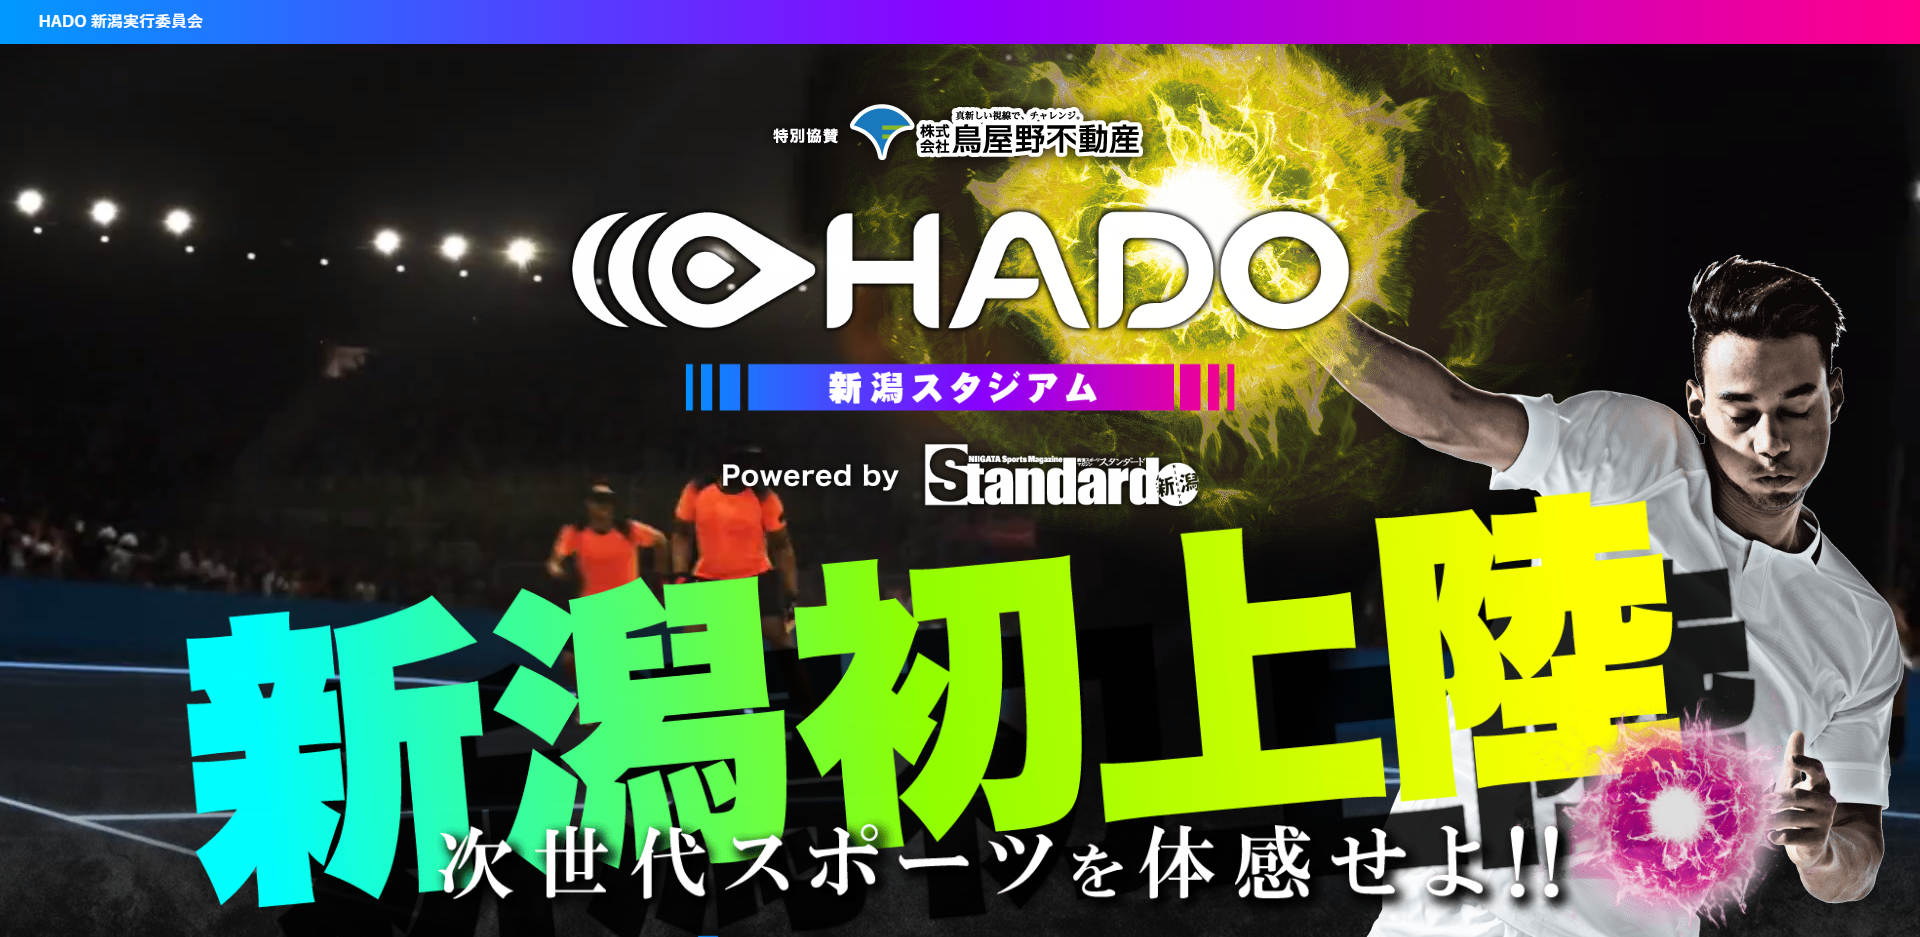 期間限定で新潟に上陸した次世代スポーツ「HADO」